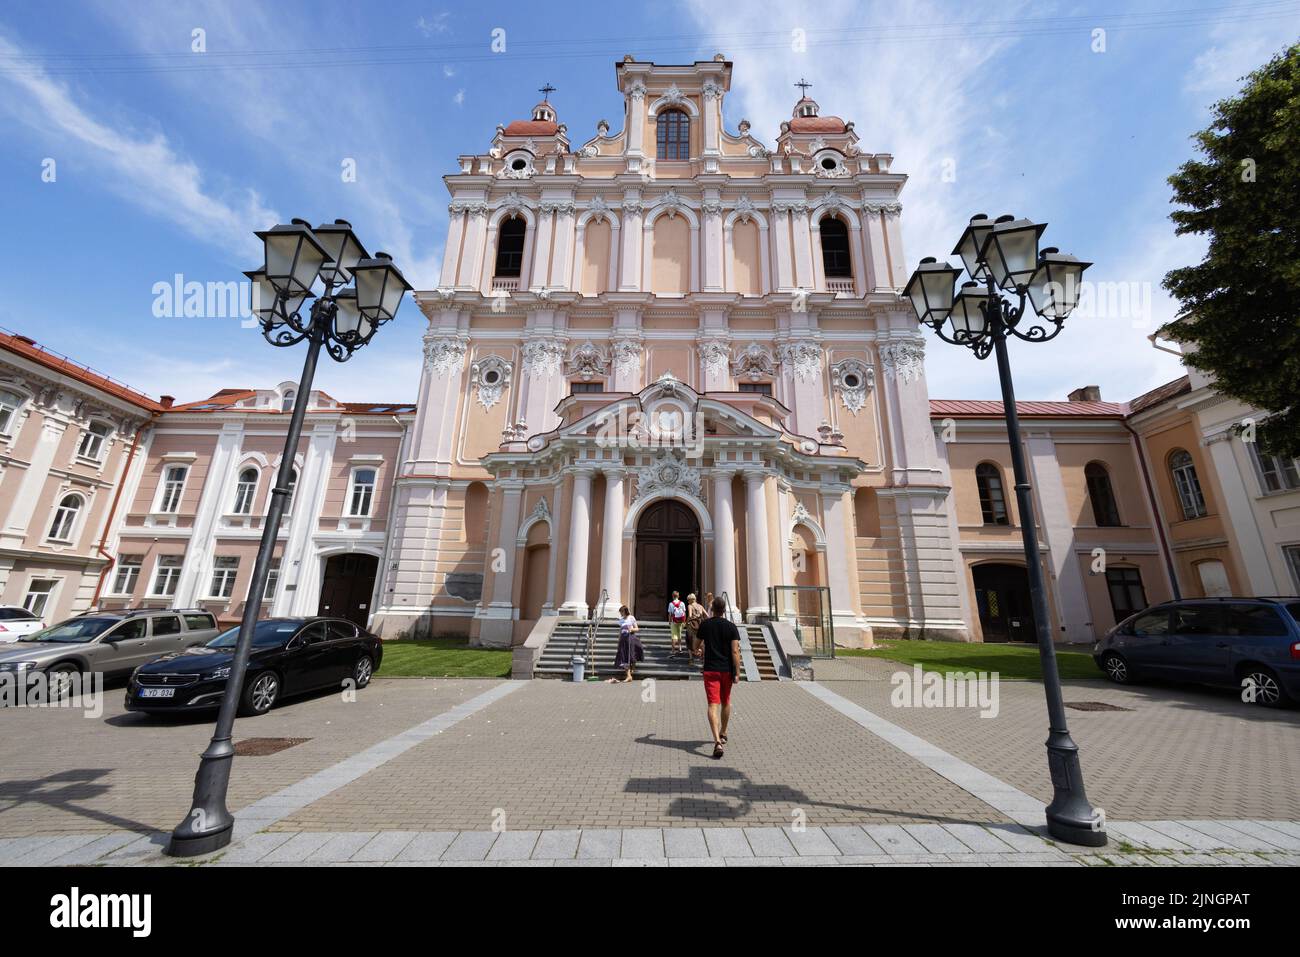 Personnes à l'extérieur de l'église Saint Casimir extérieur, une église catholique baroque du 17th siècle, vieille ville de Vilnius, Vilnius, Lituanie Europe Banque D'Images